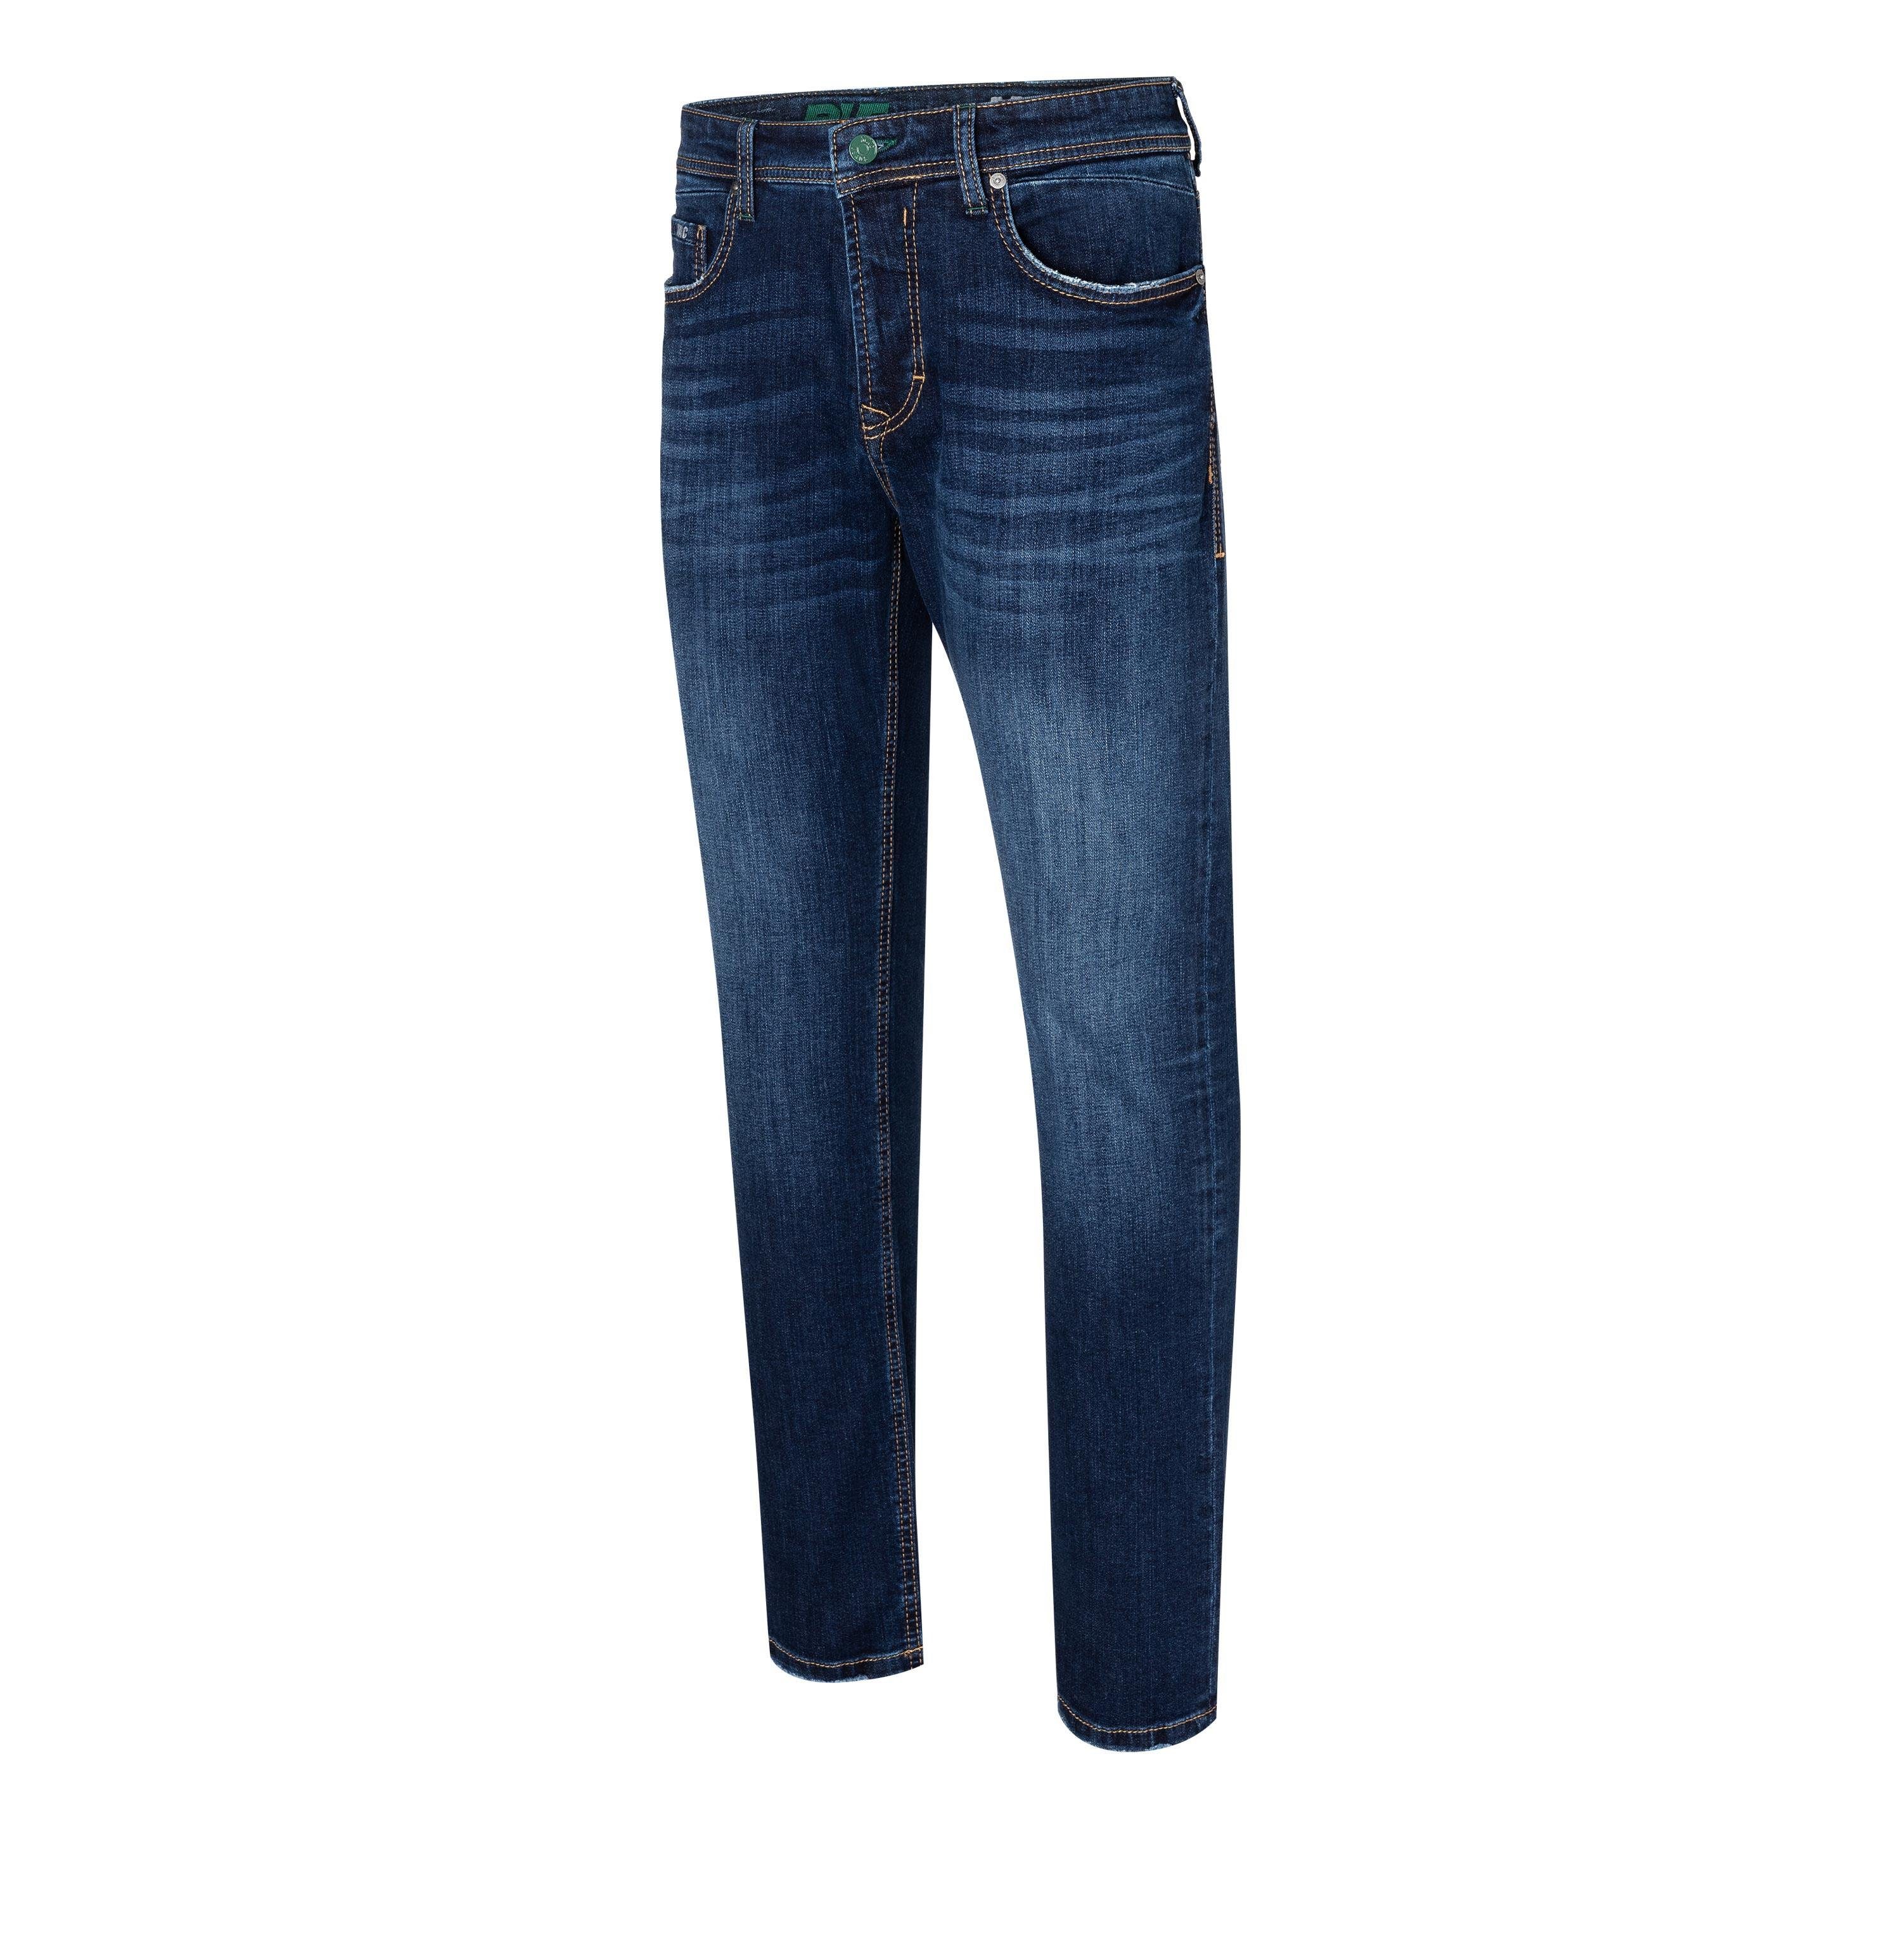 MAC 5-Pocket-Jeans MAC BEN dark H754 indigo 0382-05-0978 blue